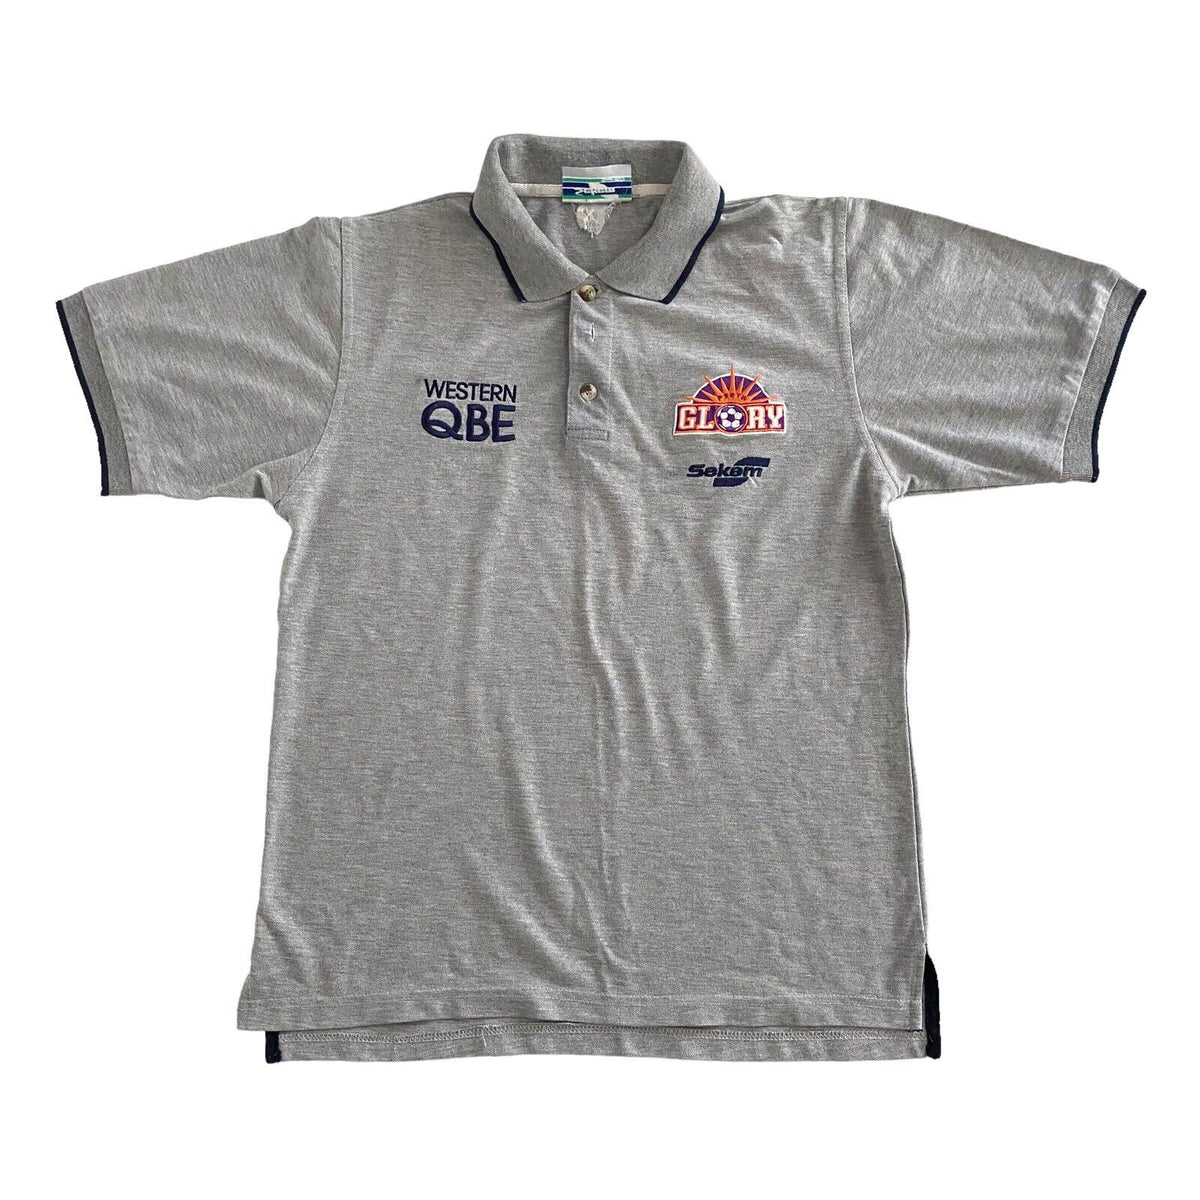 Perth Glory Sekem Vintage Polo Shirt - Small